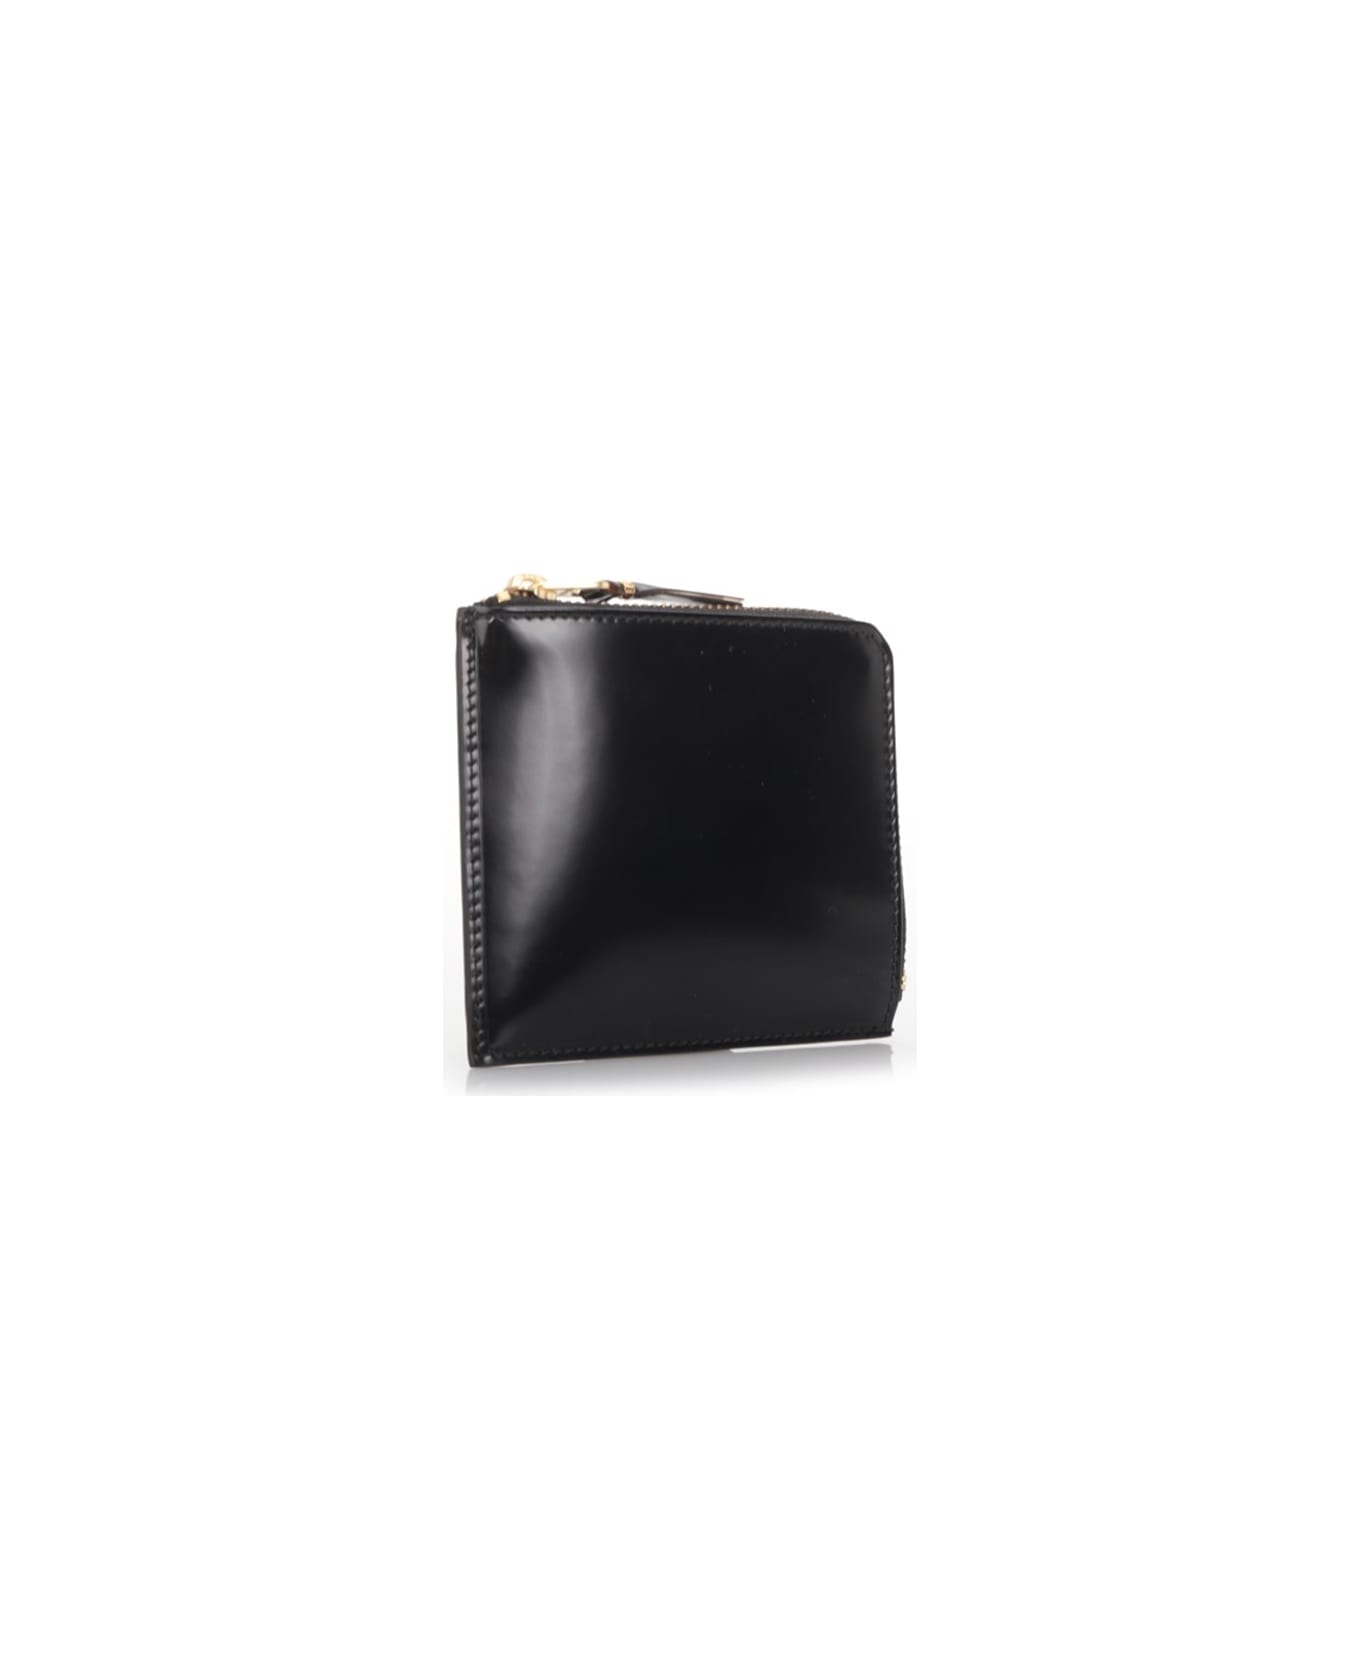 Comme des Garçons Wallet Black Wallet With Gold Colored Inside - Black